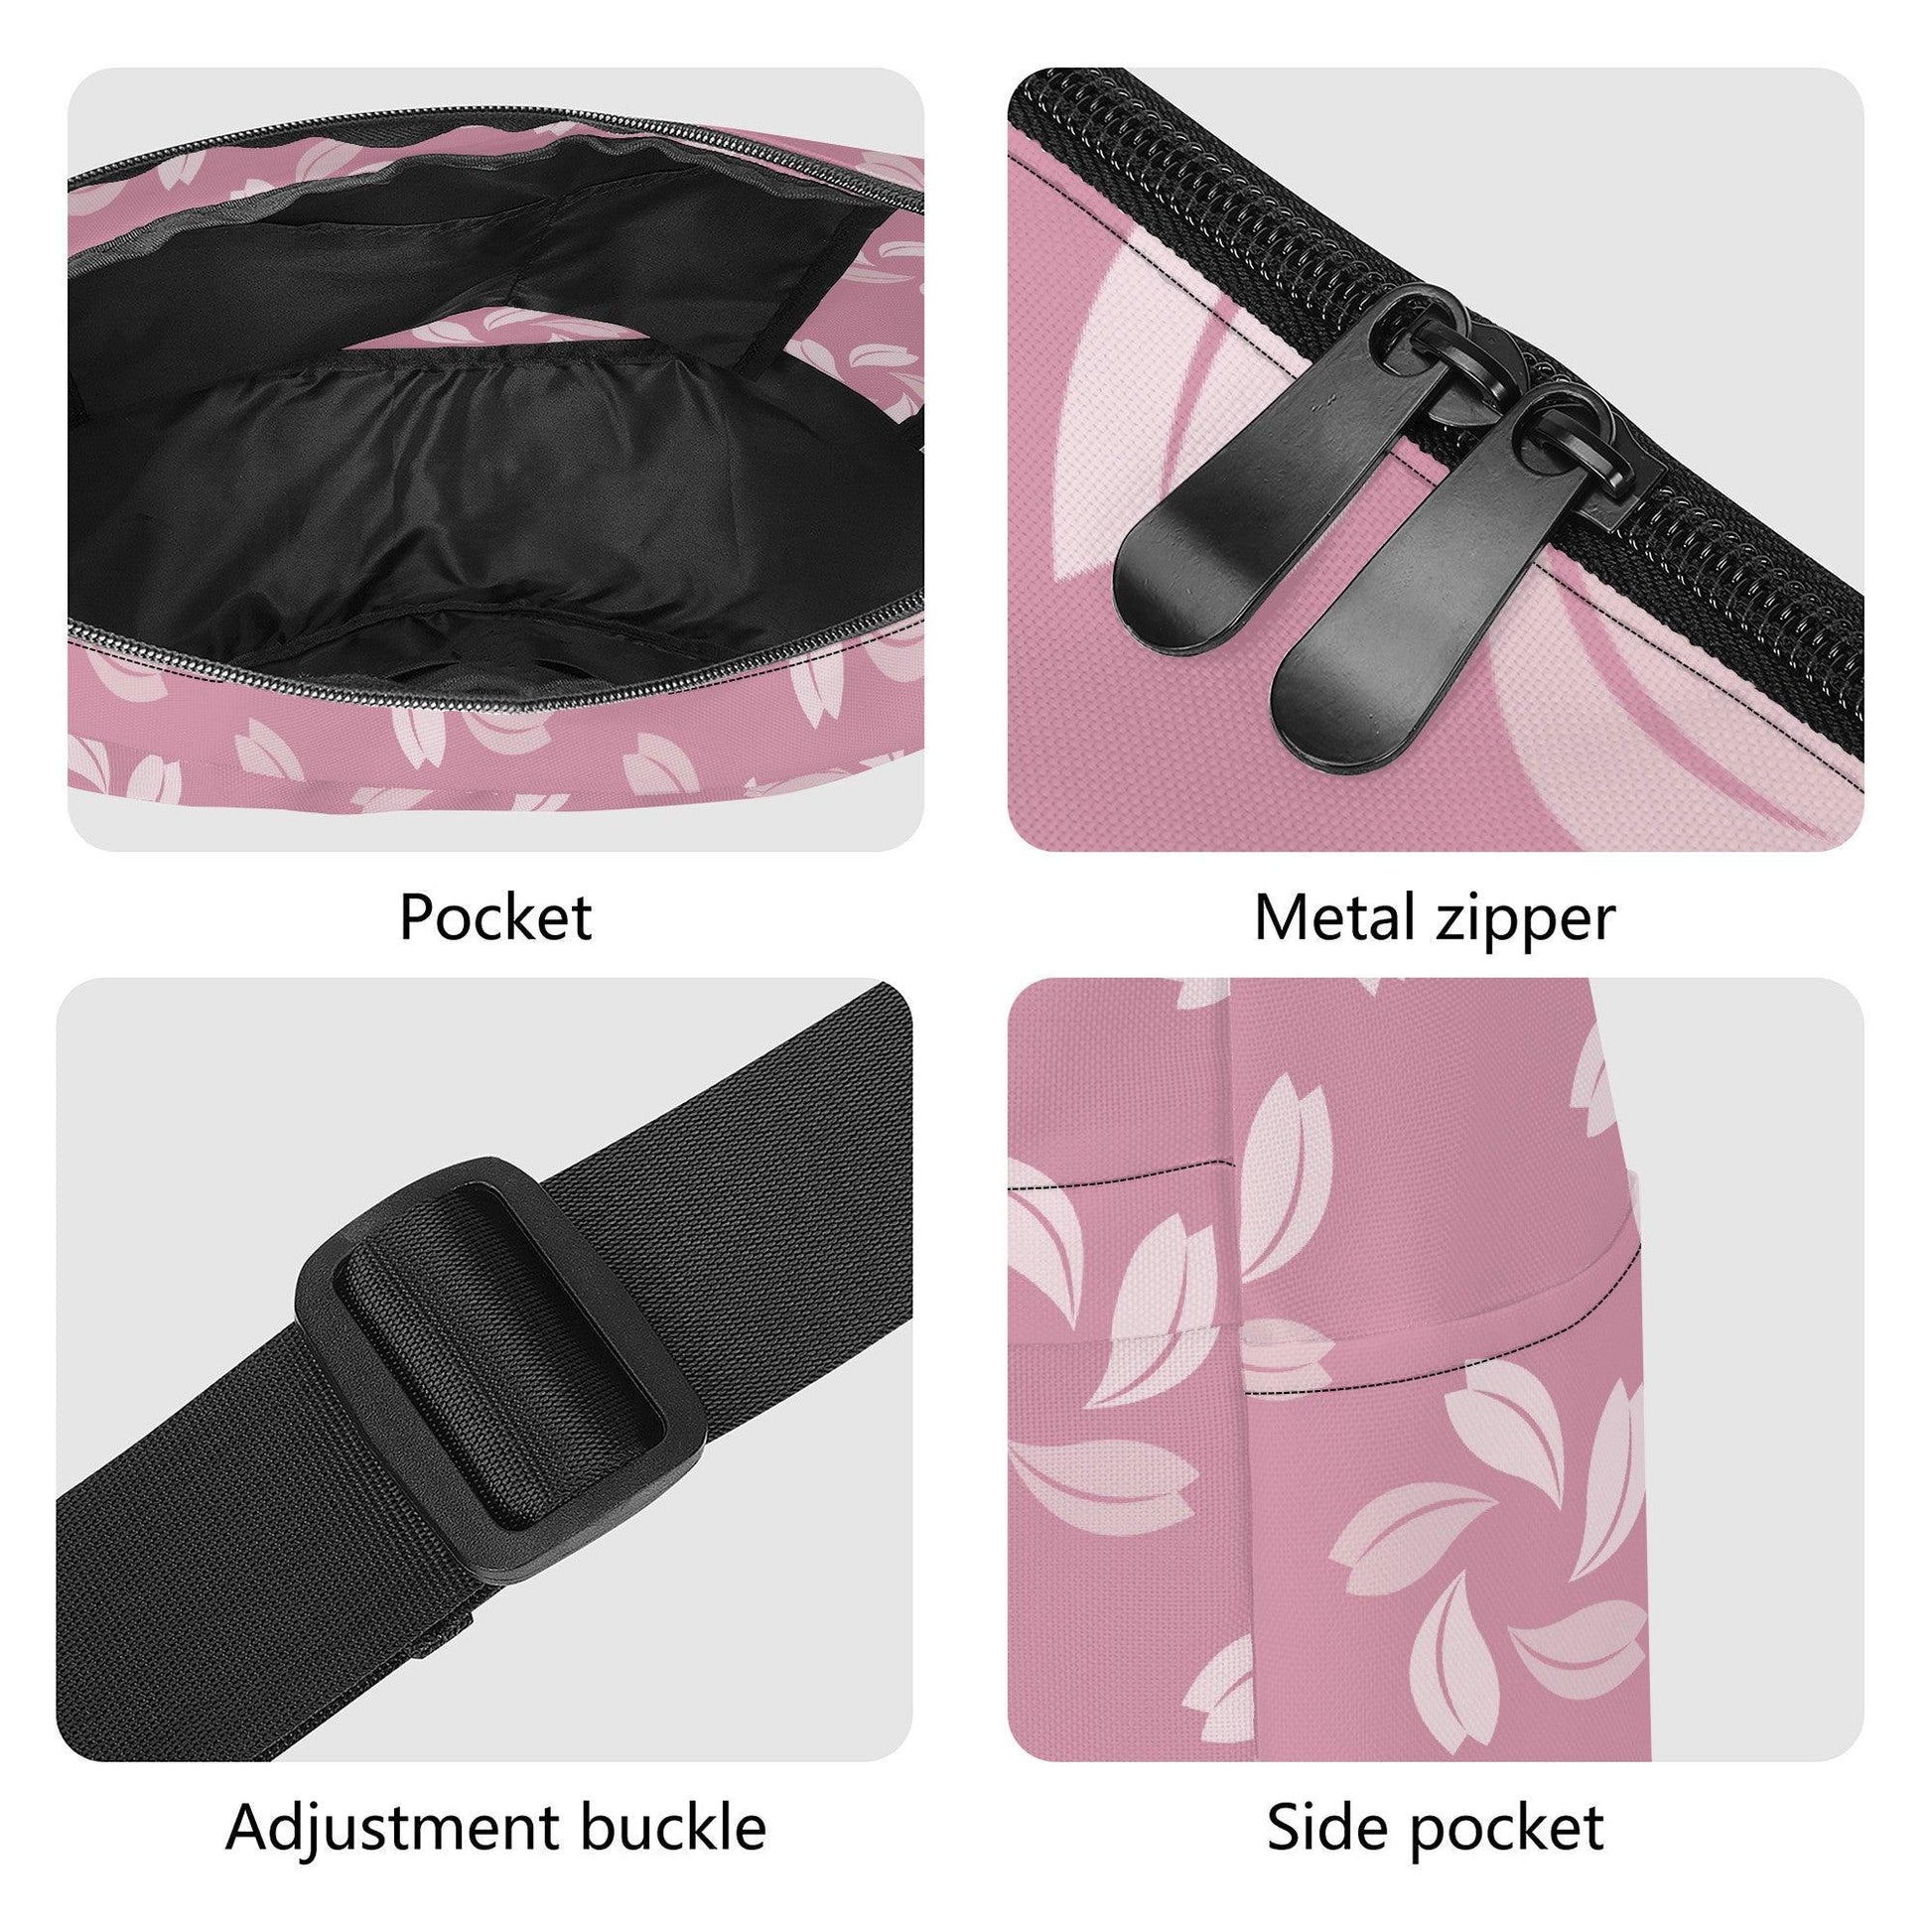 Pink Petals Commuter Bag